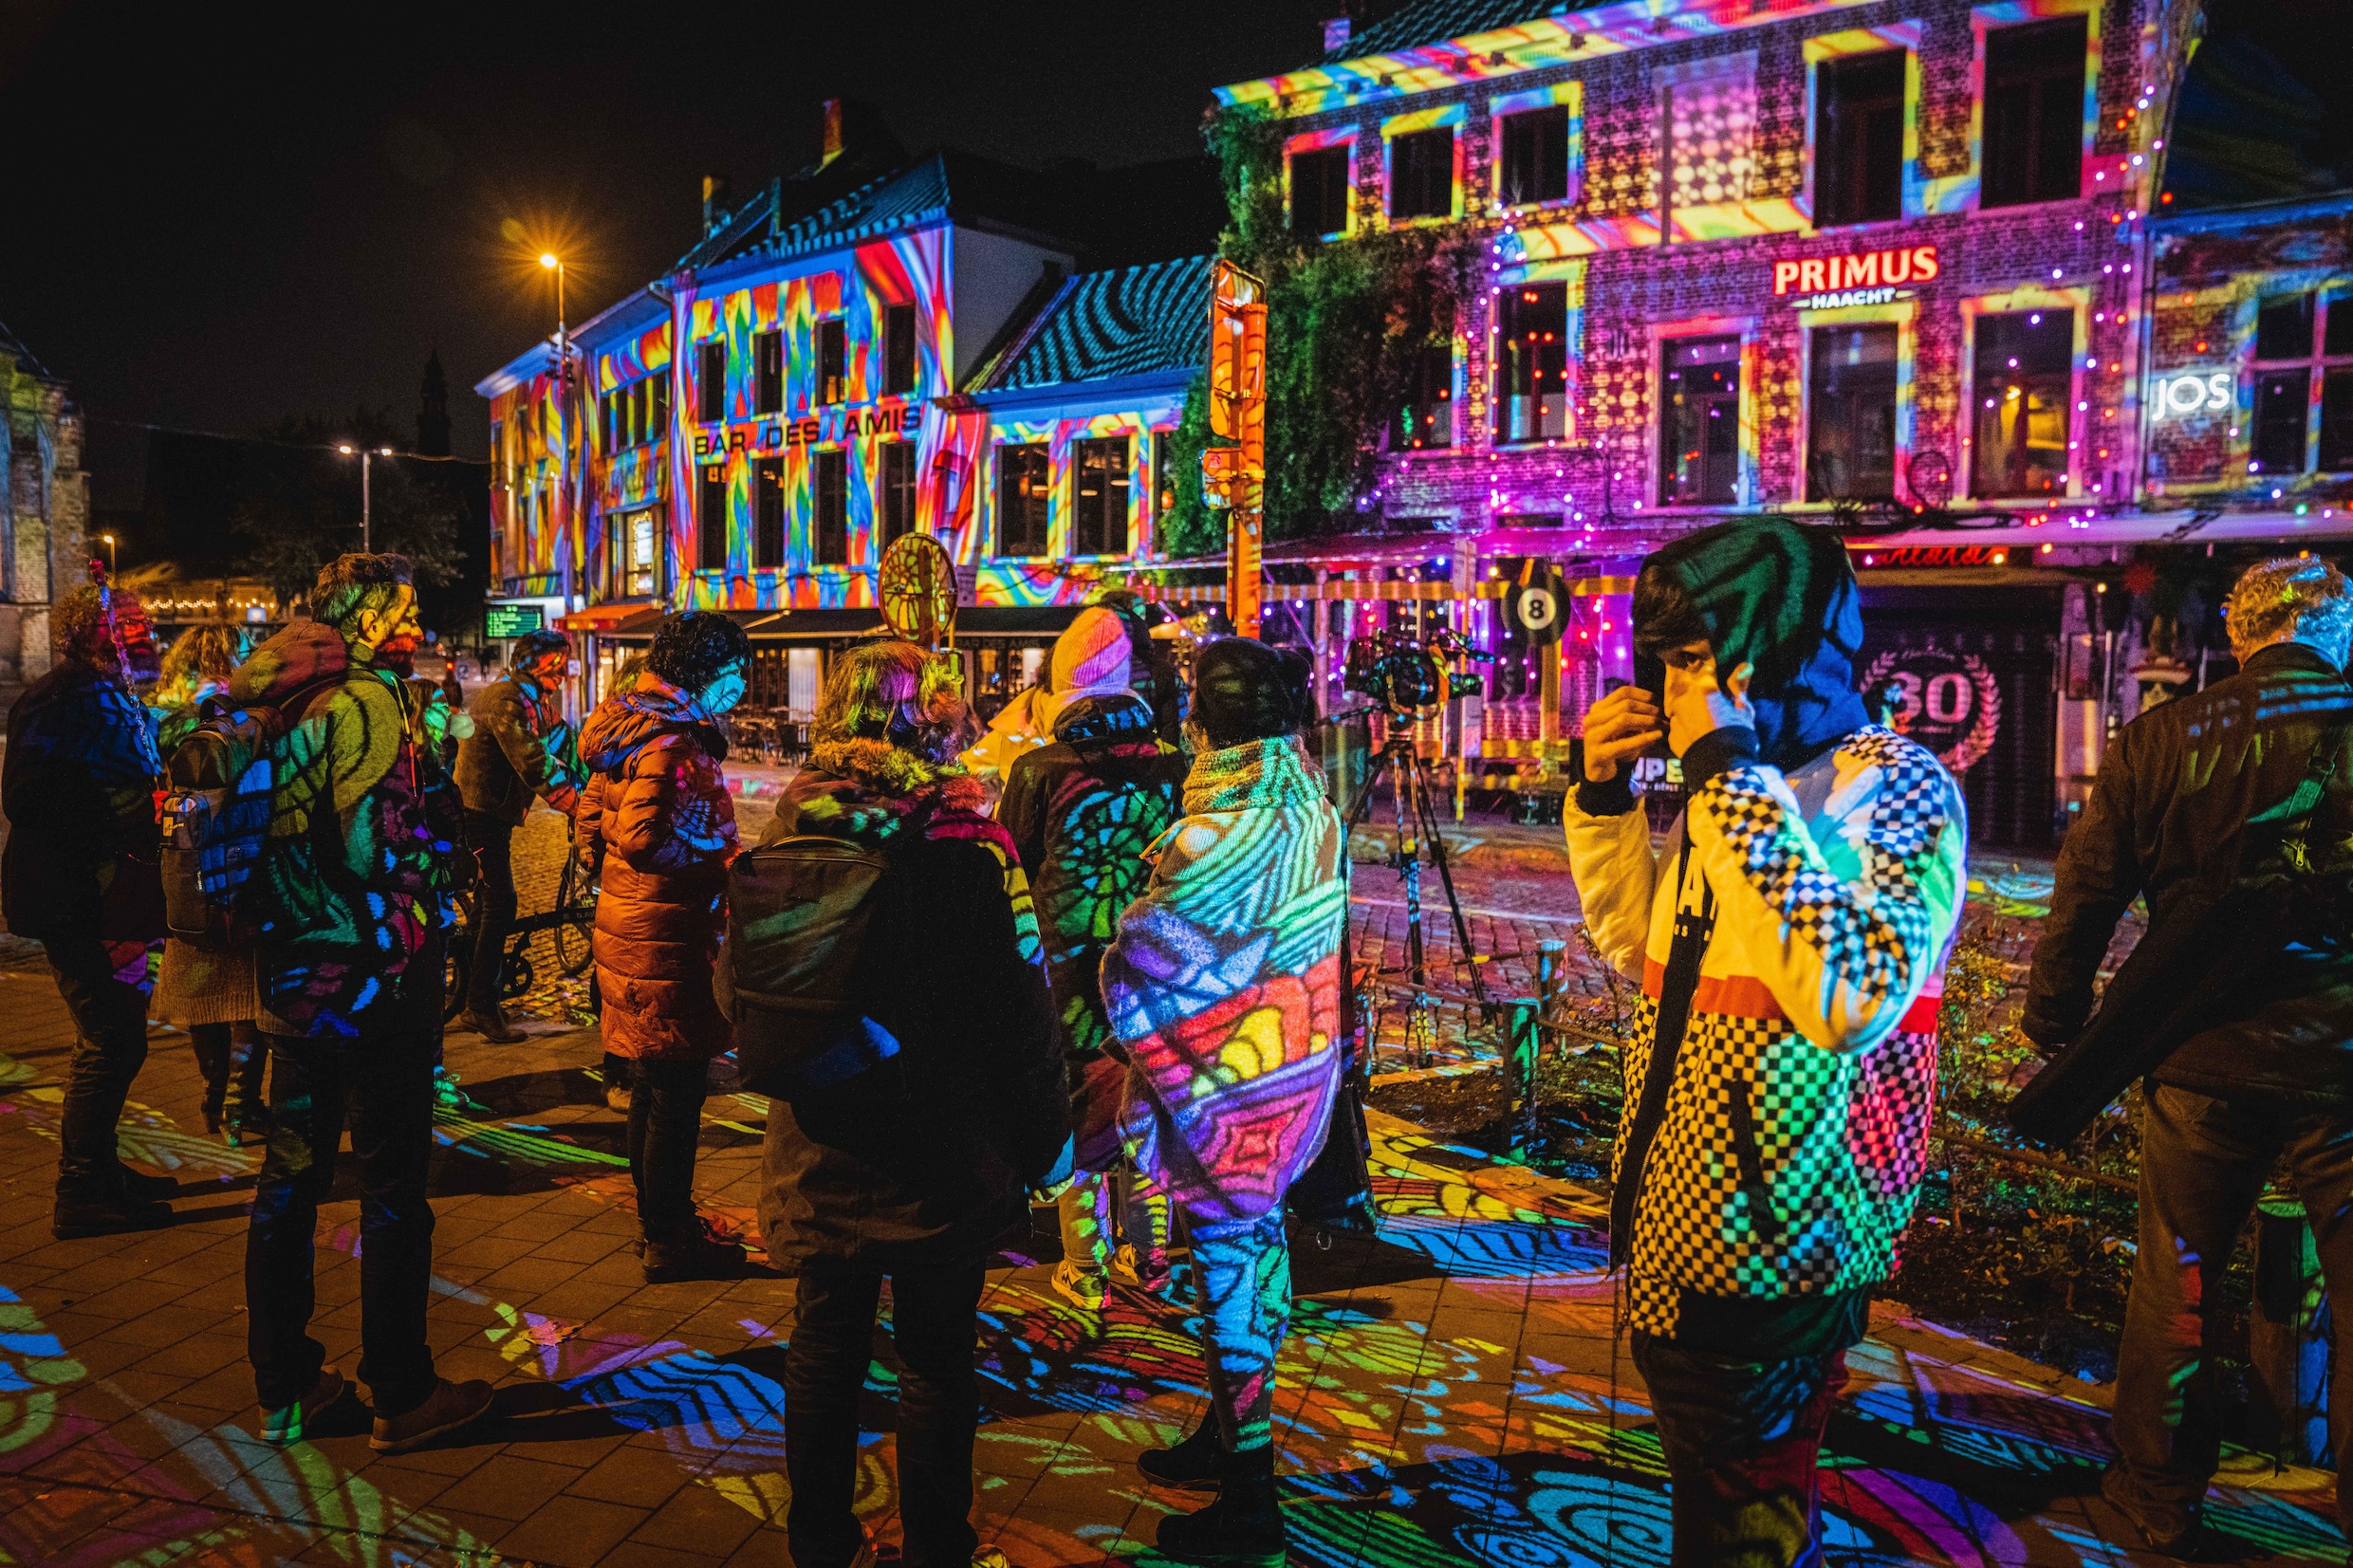 Lichtfestival 2021 in Gent: het parcours, hoe u er geraakt en wat u kan verwachten